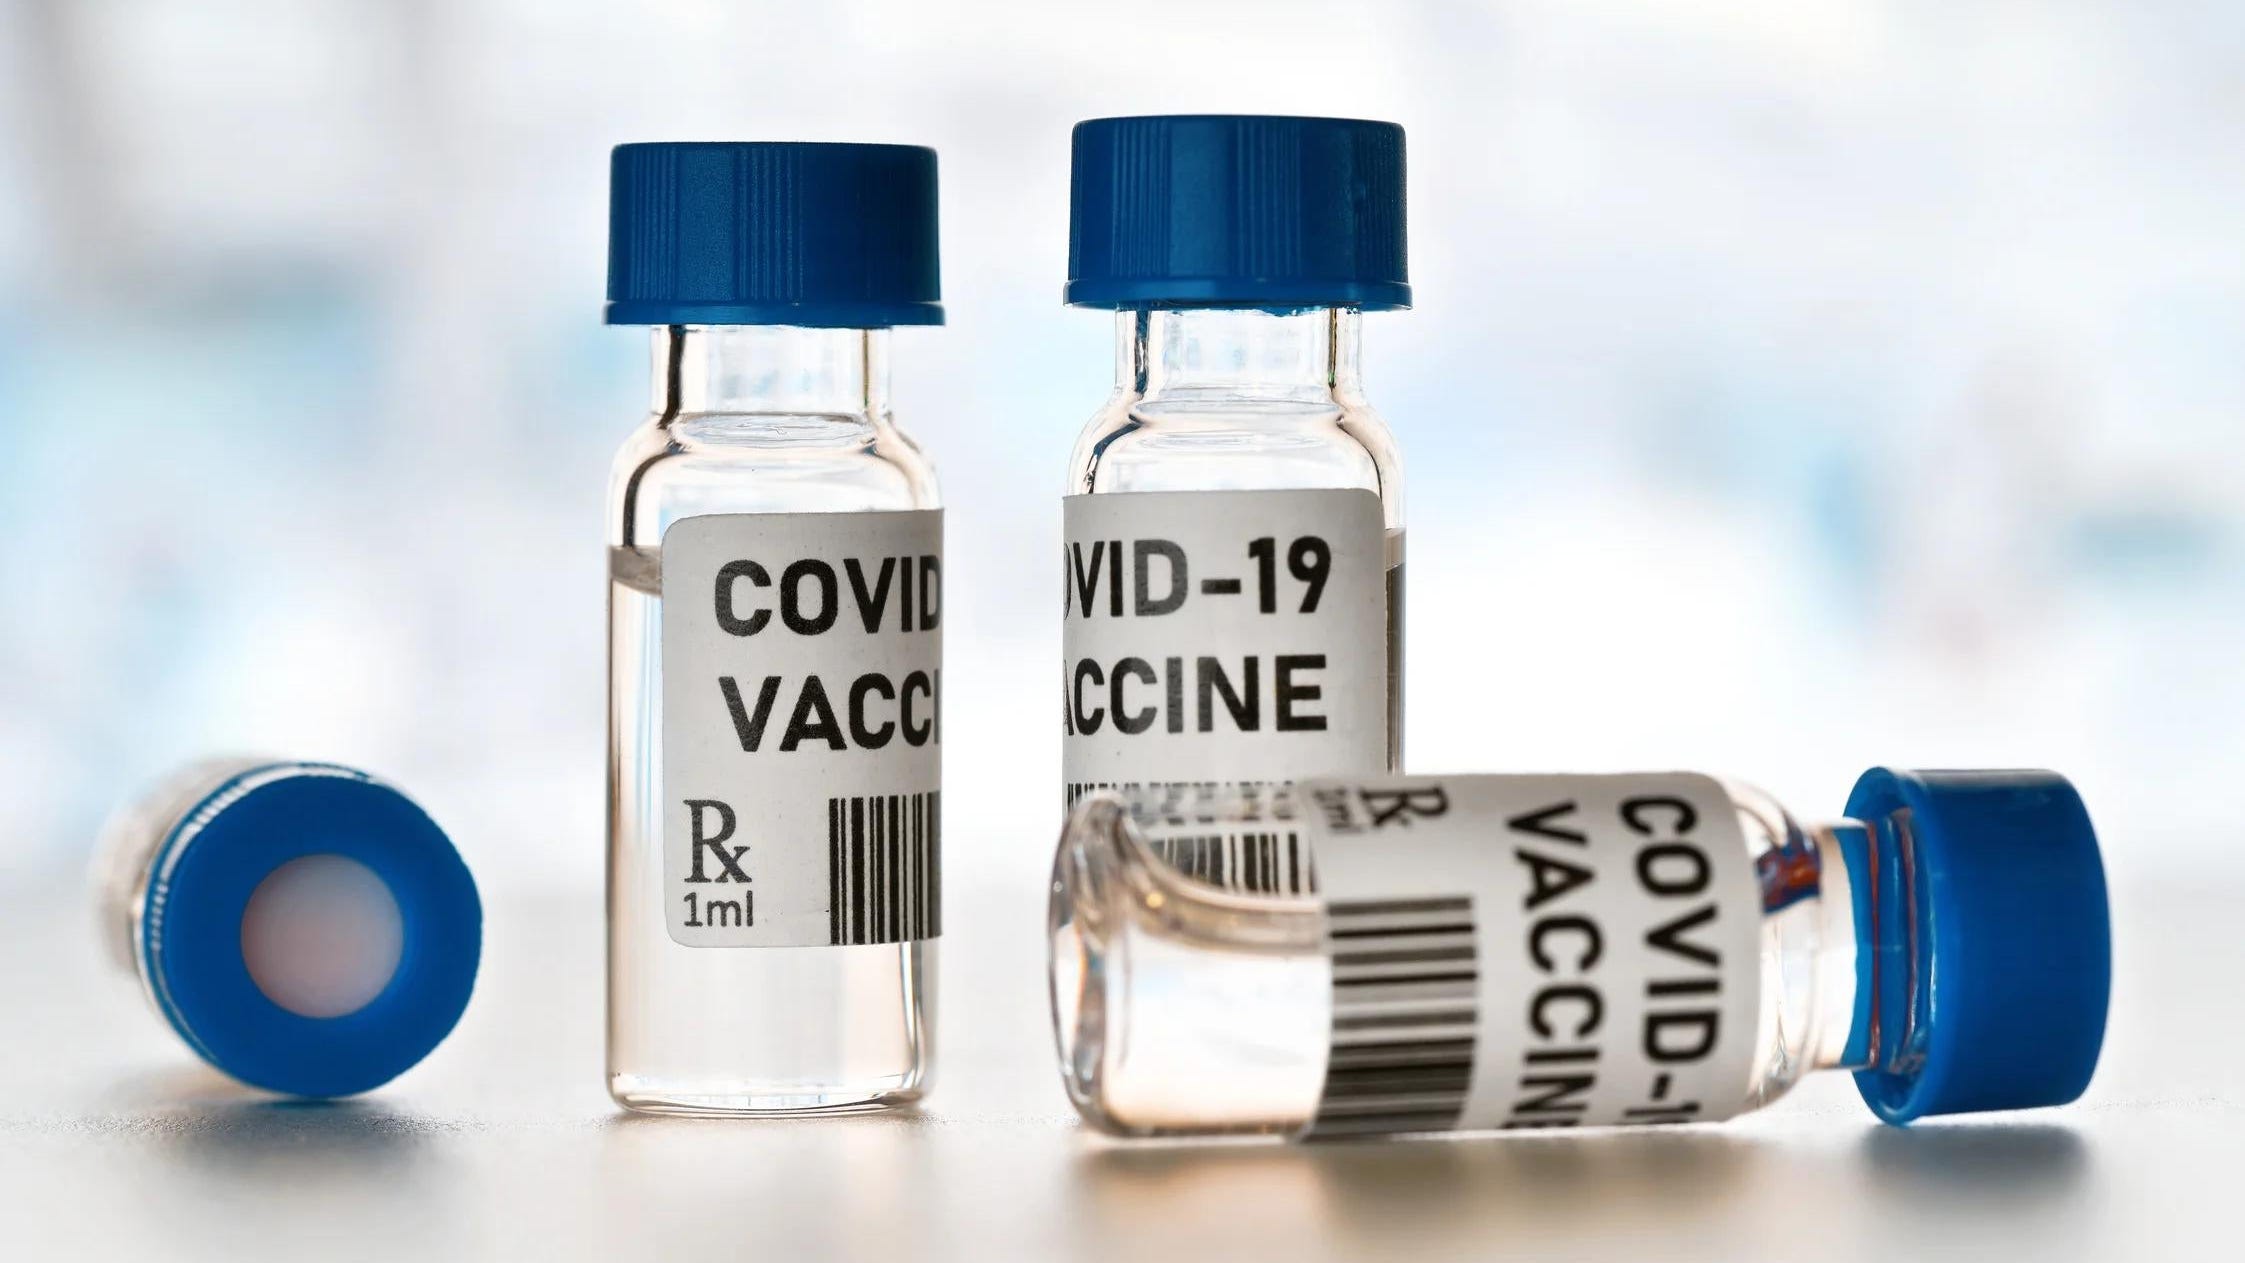 Share Your Coronavirus And Vaccine Stories